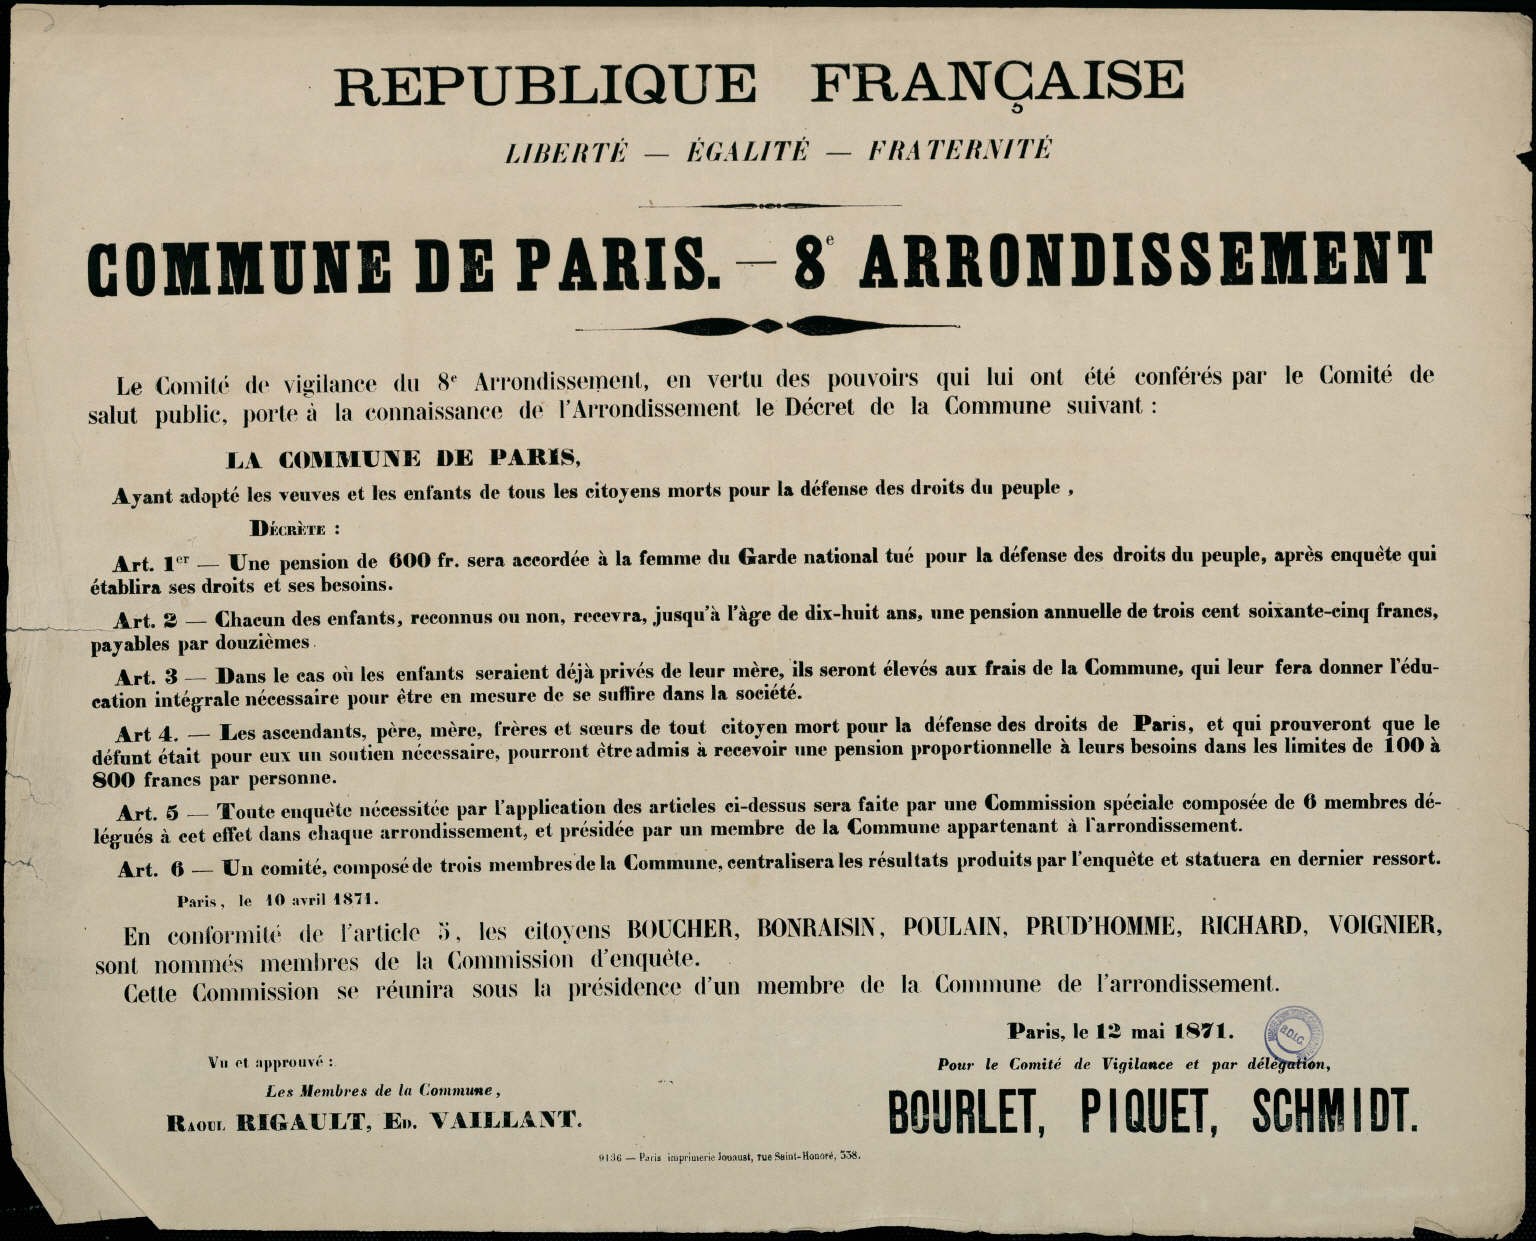 Affiche de la Commune de Paris du 12 mai 1871, VIIIe arrondissement